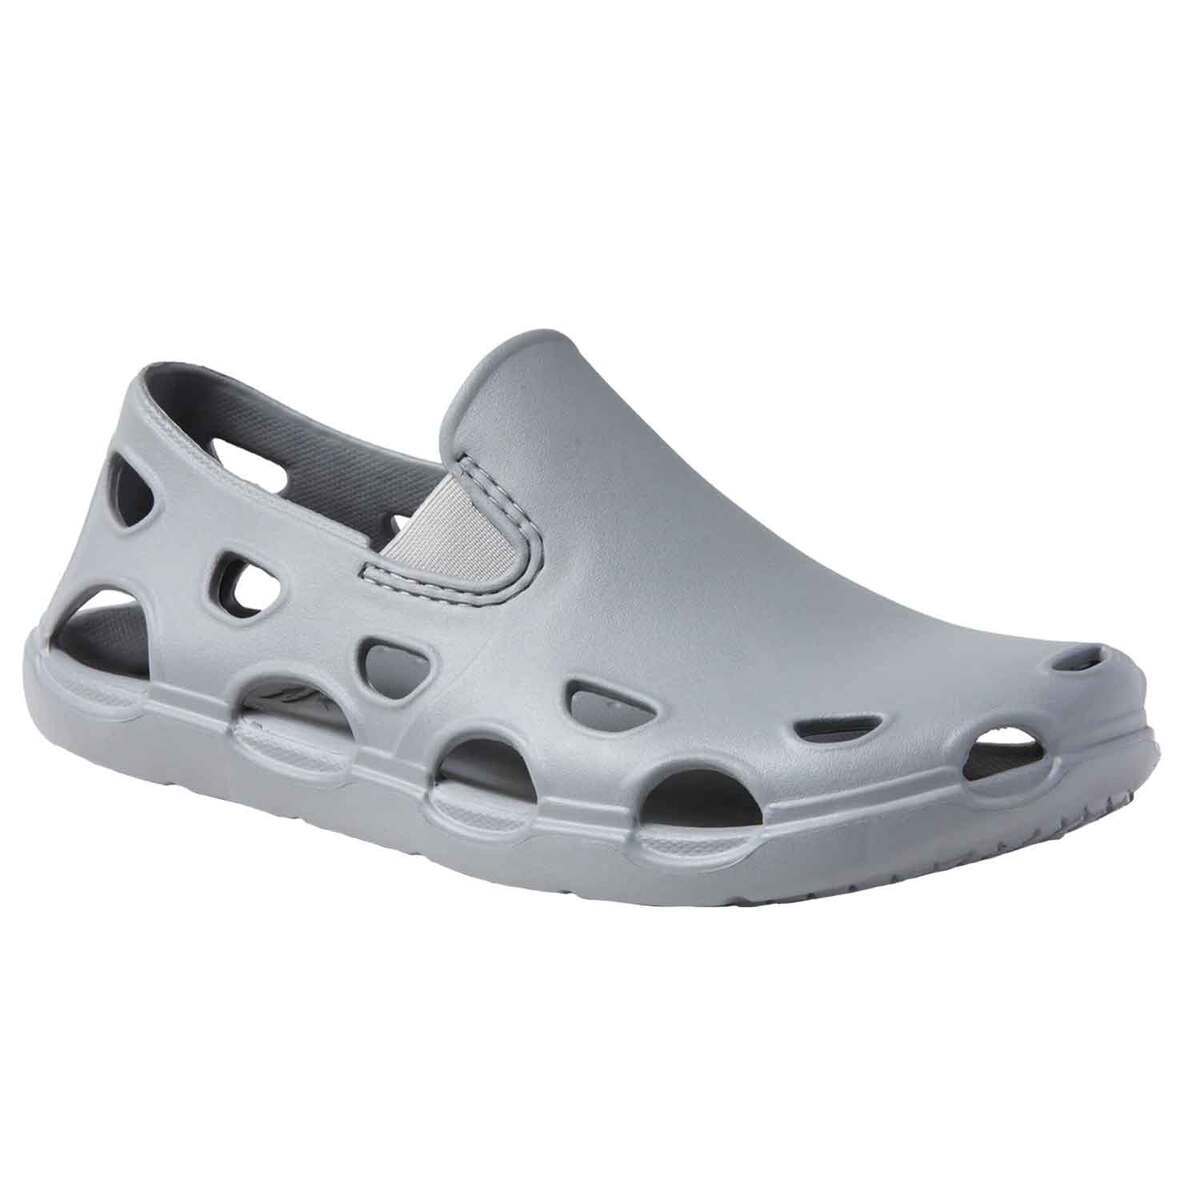 Huk Men's Brewster ATR Water Shoes - Sharkskin - Size 14